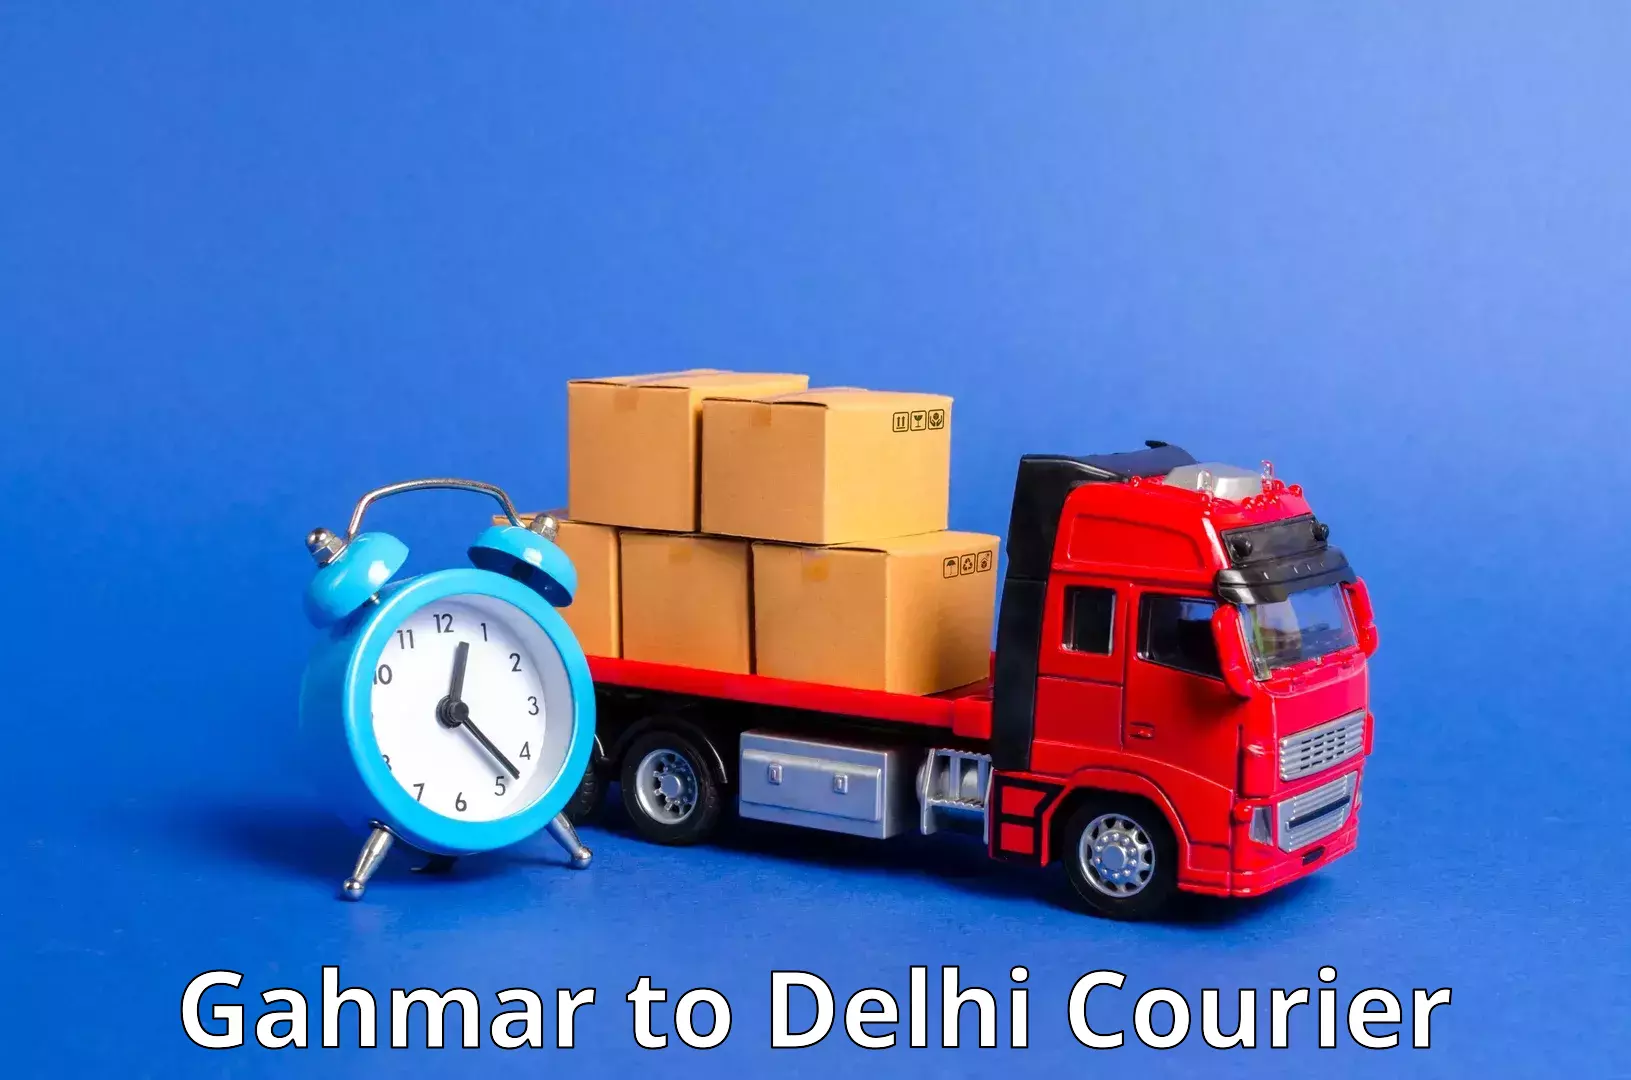 Premium courier services Gahmar to Delhi